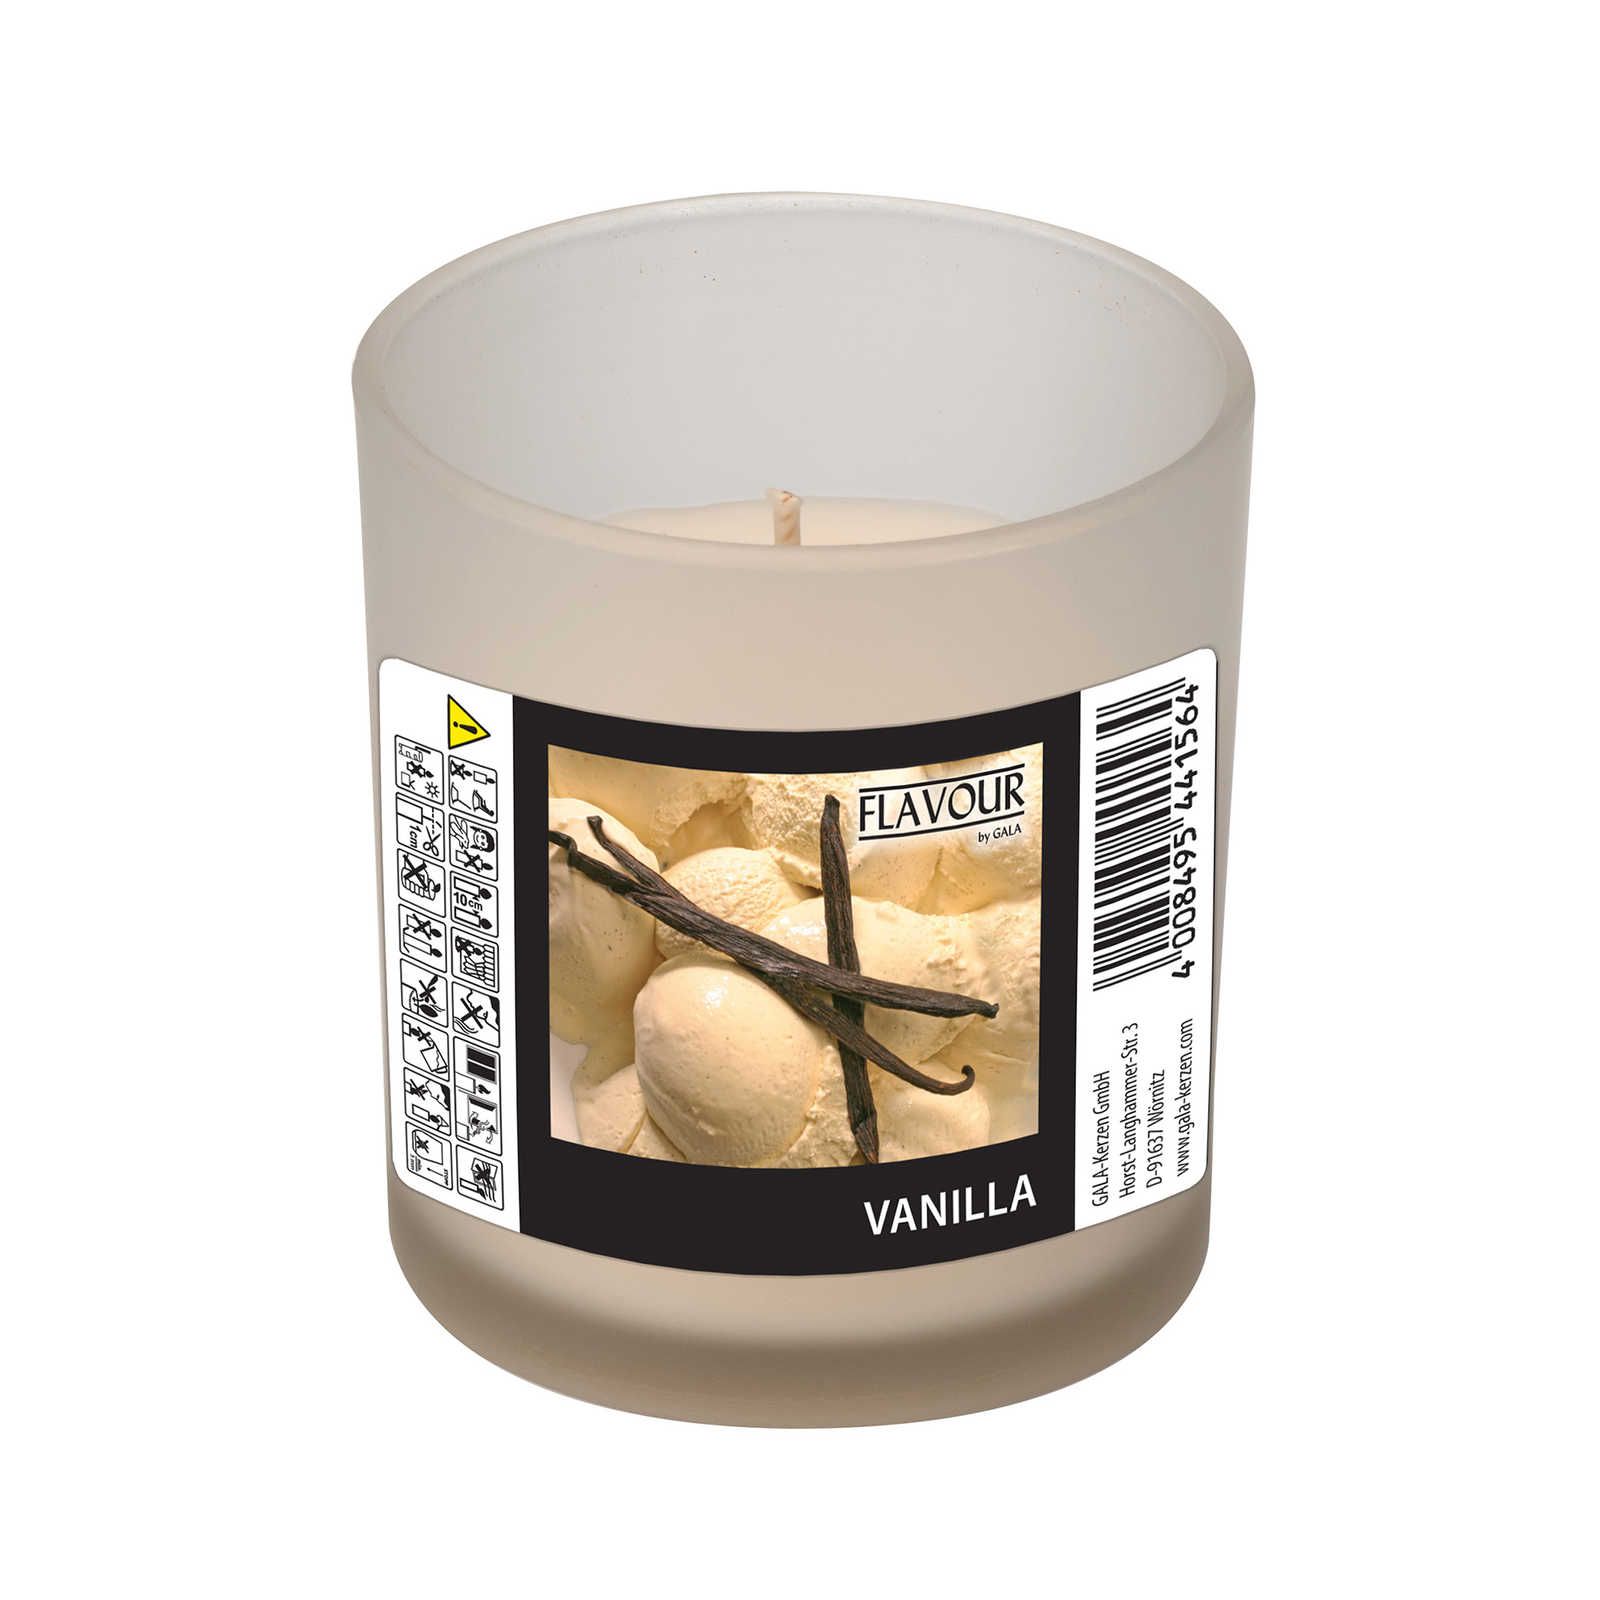             Vanille Duftkerze mit cremigen Vanilleduft – 110g
        